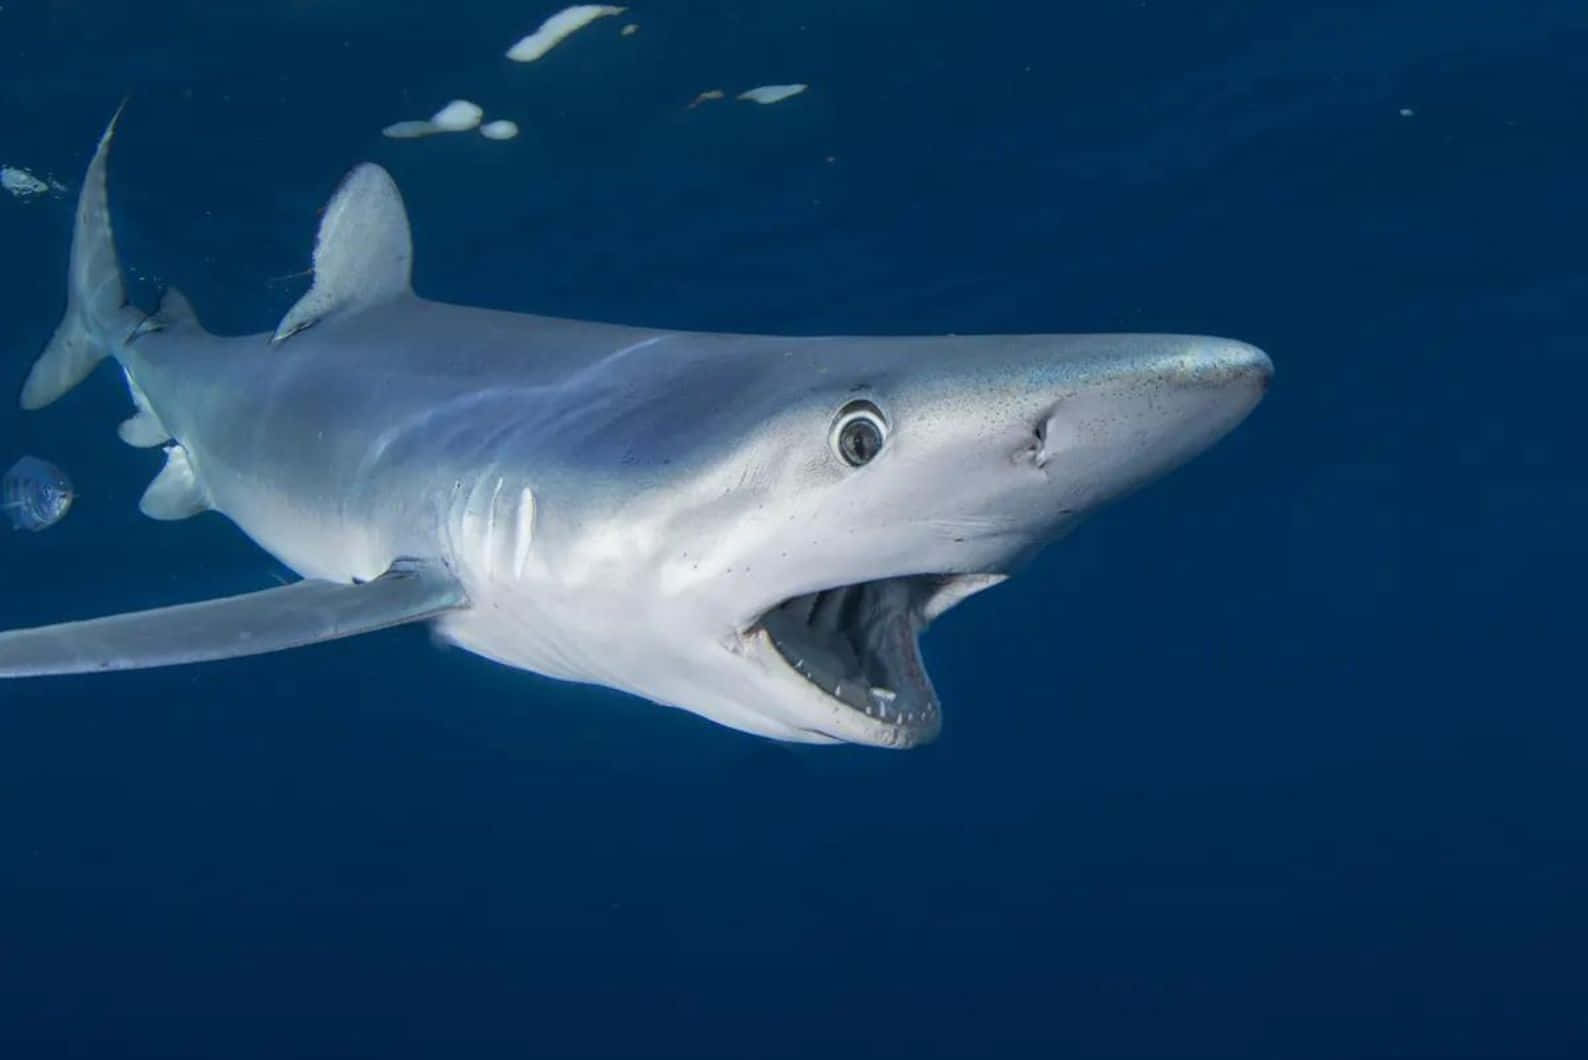 Blue Shark Underwater Closeup.jpg Wallpaper